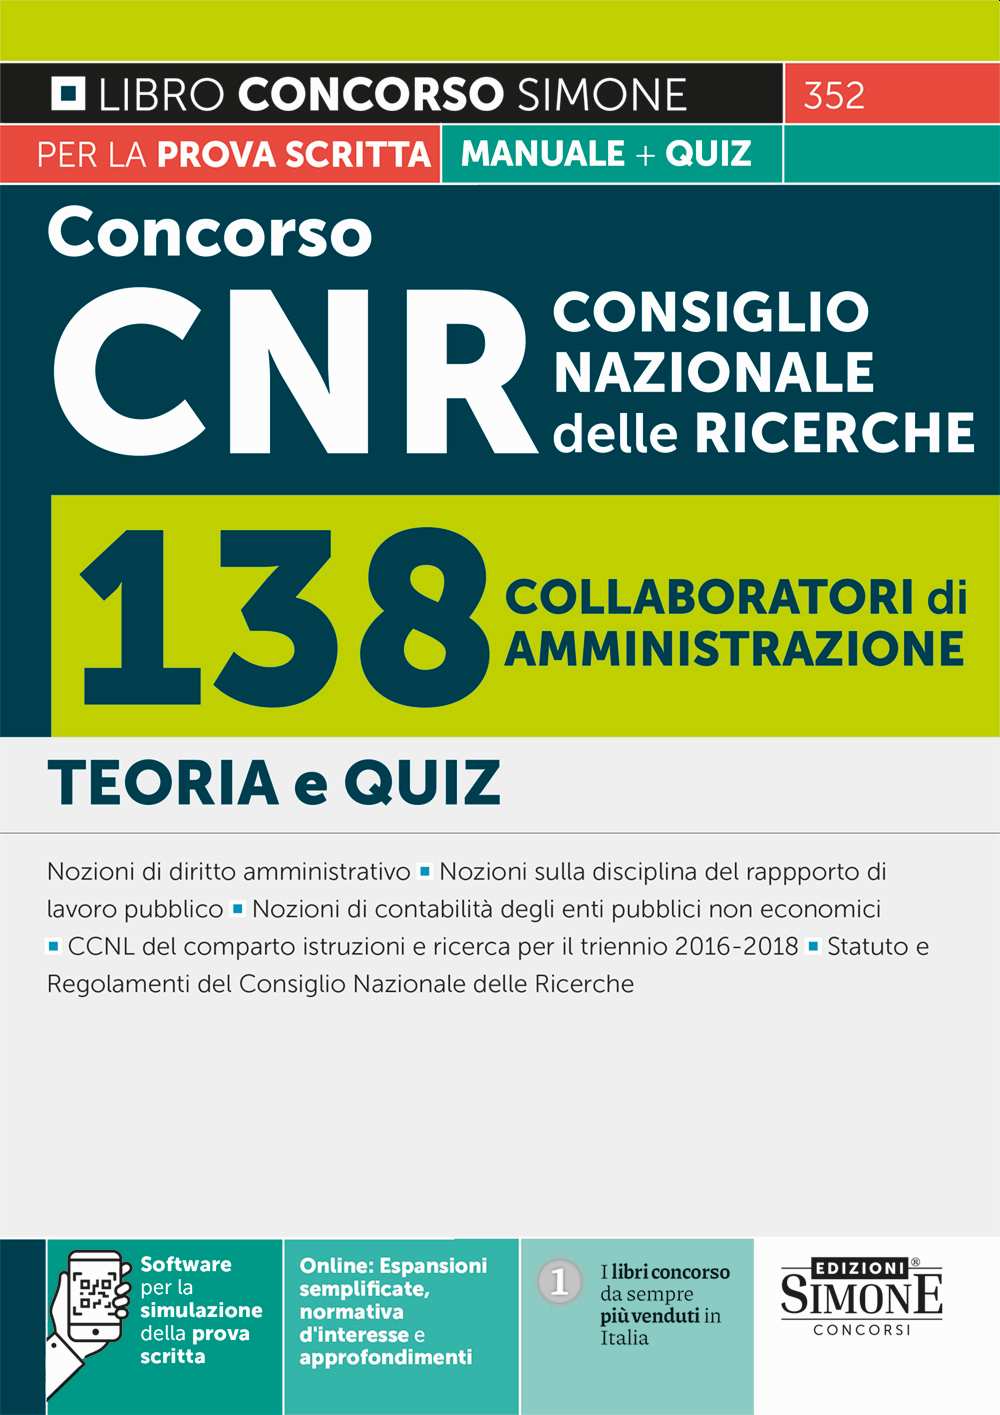 Concorso CNR Consiglio Nazionale delle Ricerche - 138 Collaboratori di amministrazione - Manuale - 352